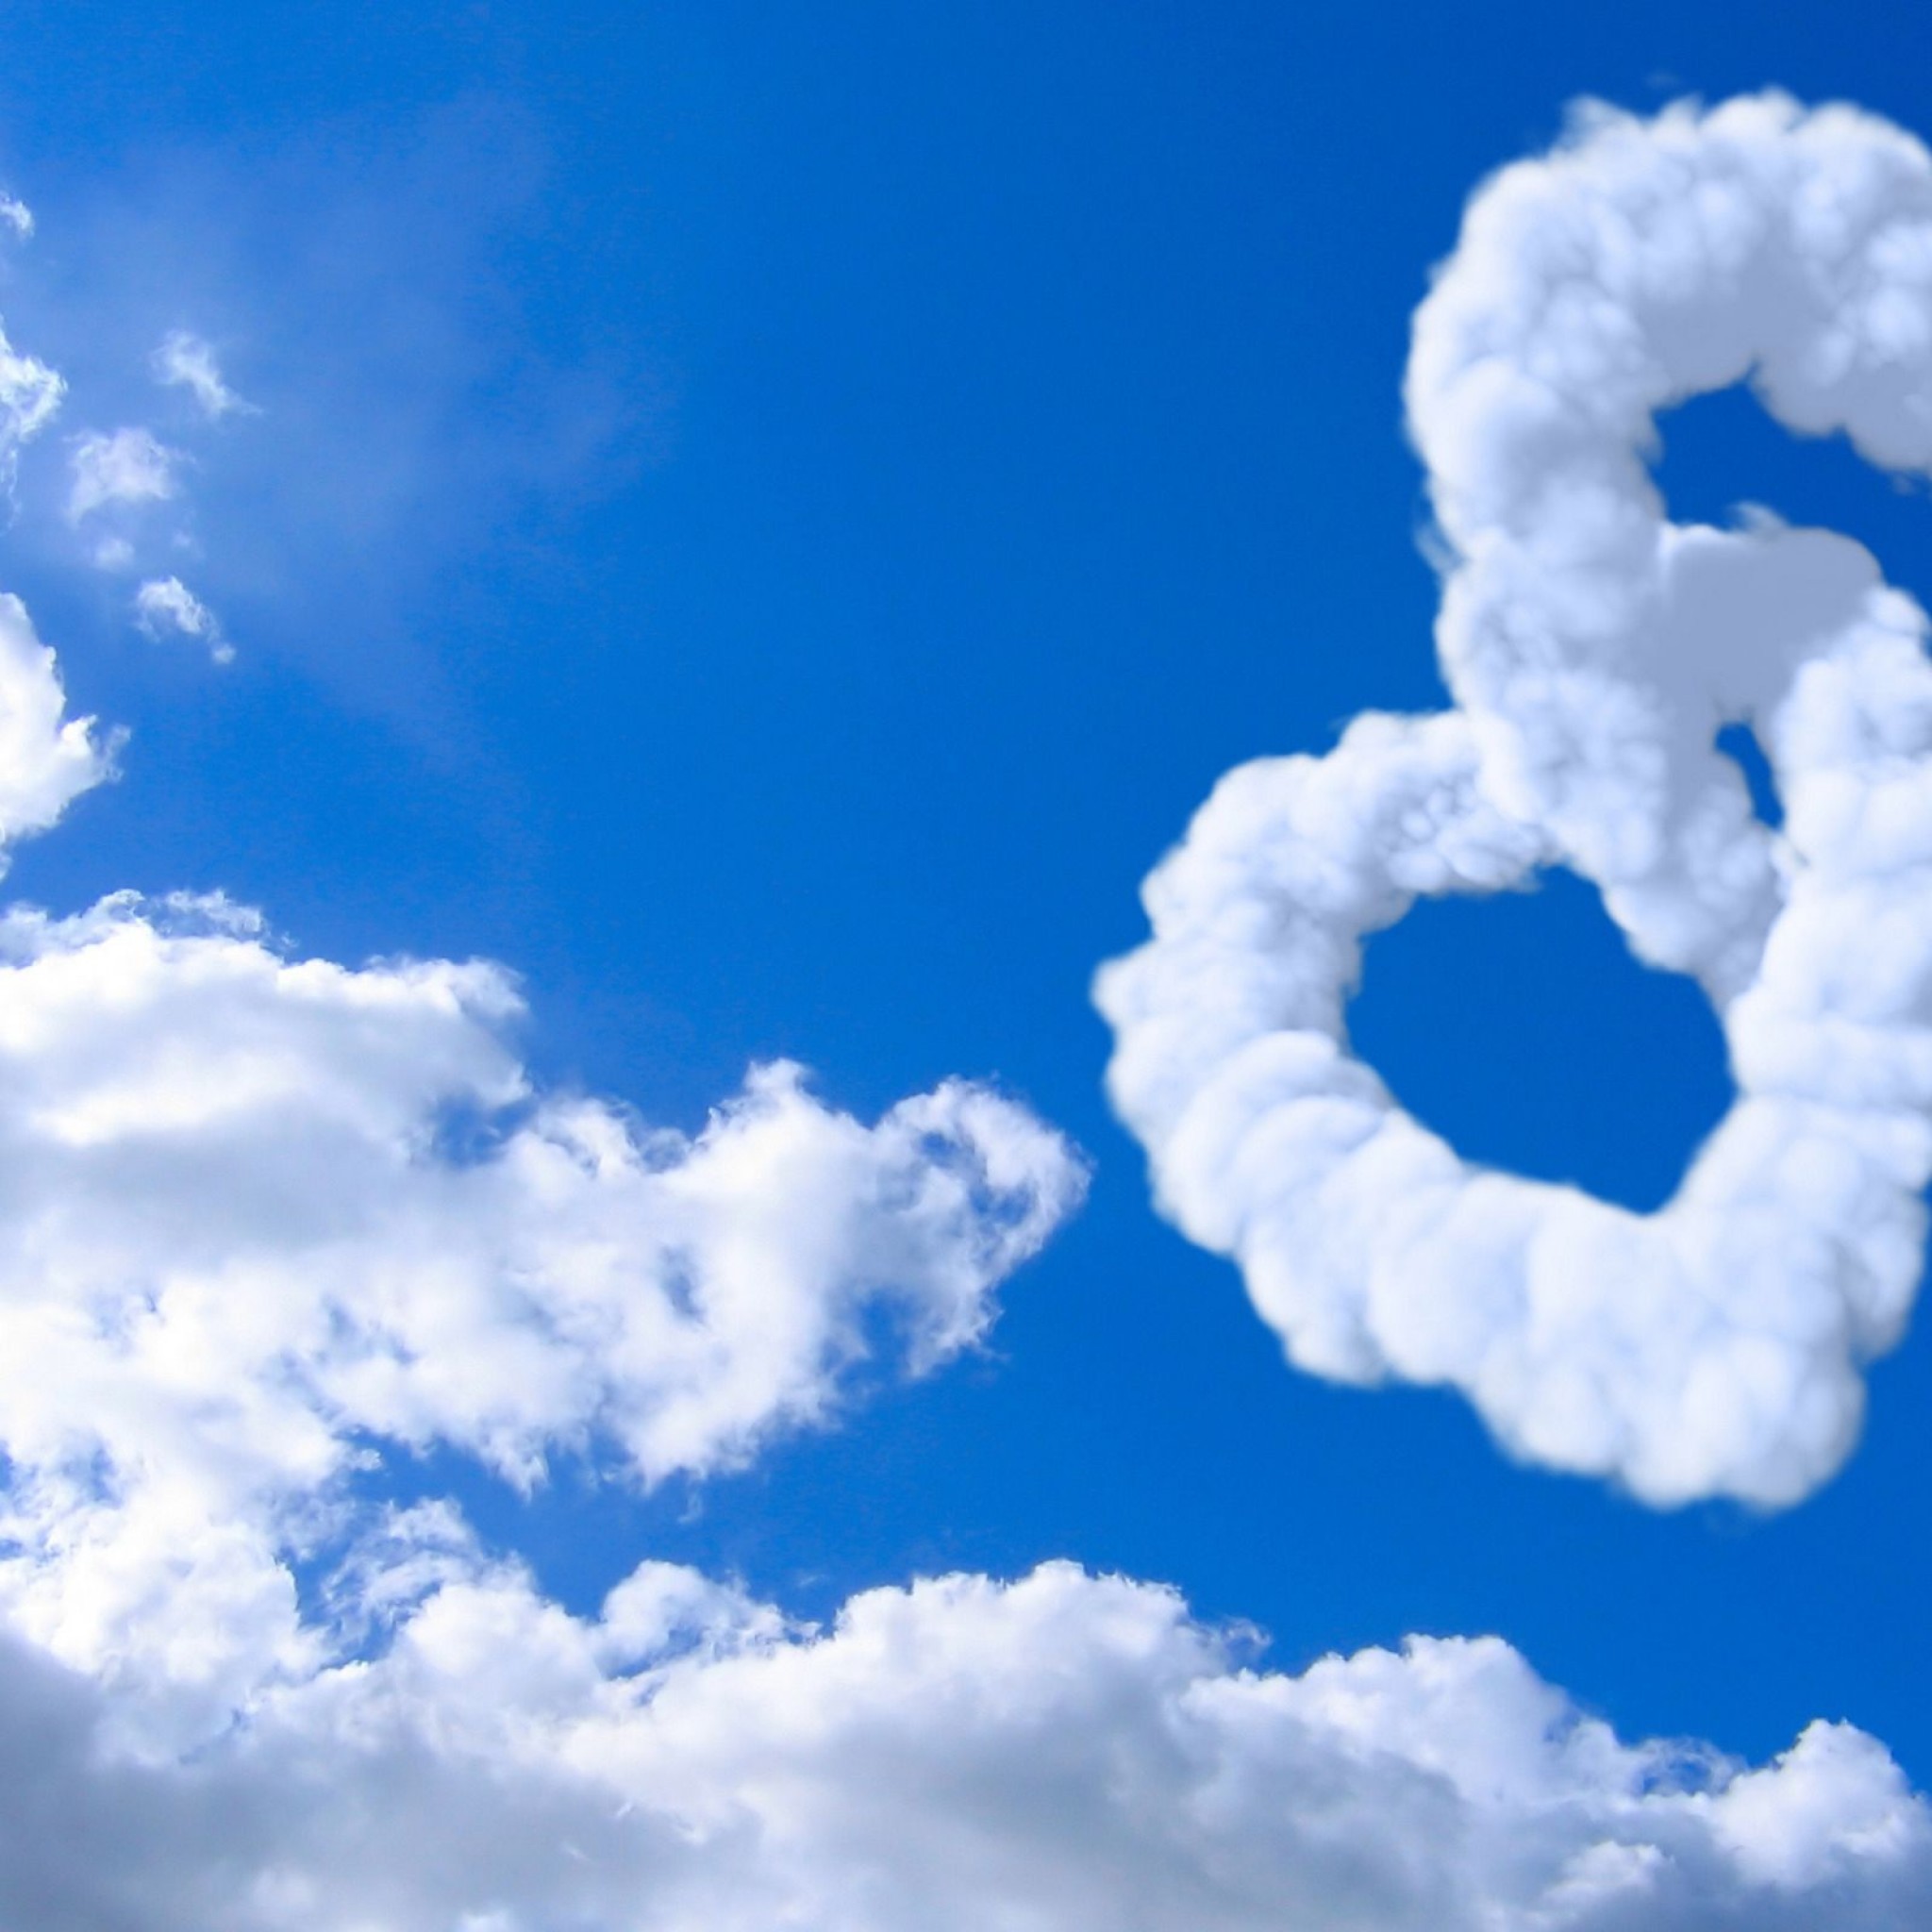 Love Heart Clouds In Blue Sky Heart February S - Blue Sky Heart Image Hd - HD Wallpaper 